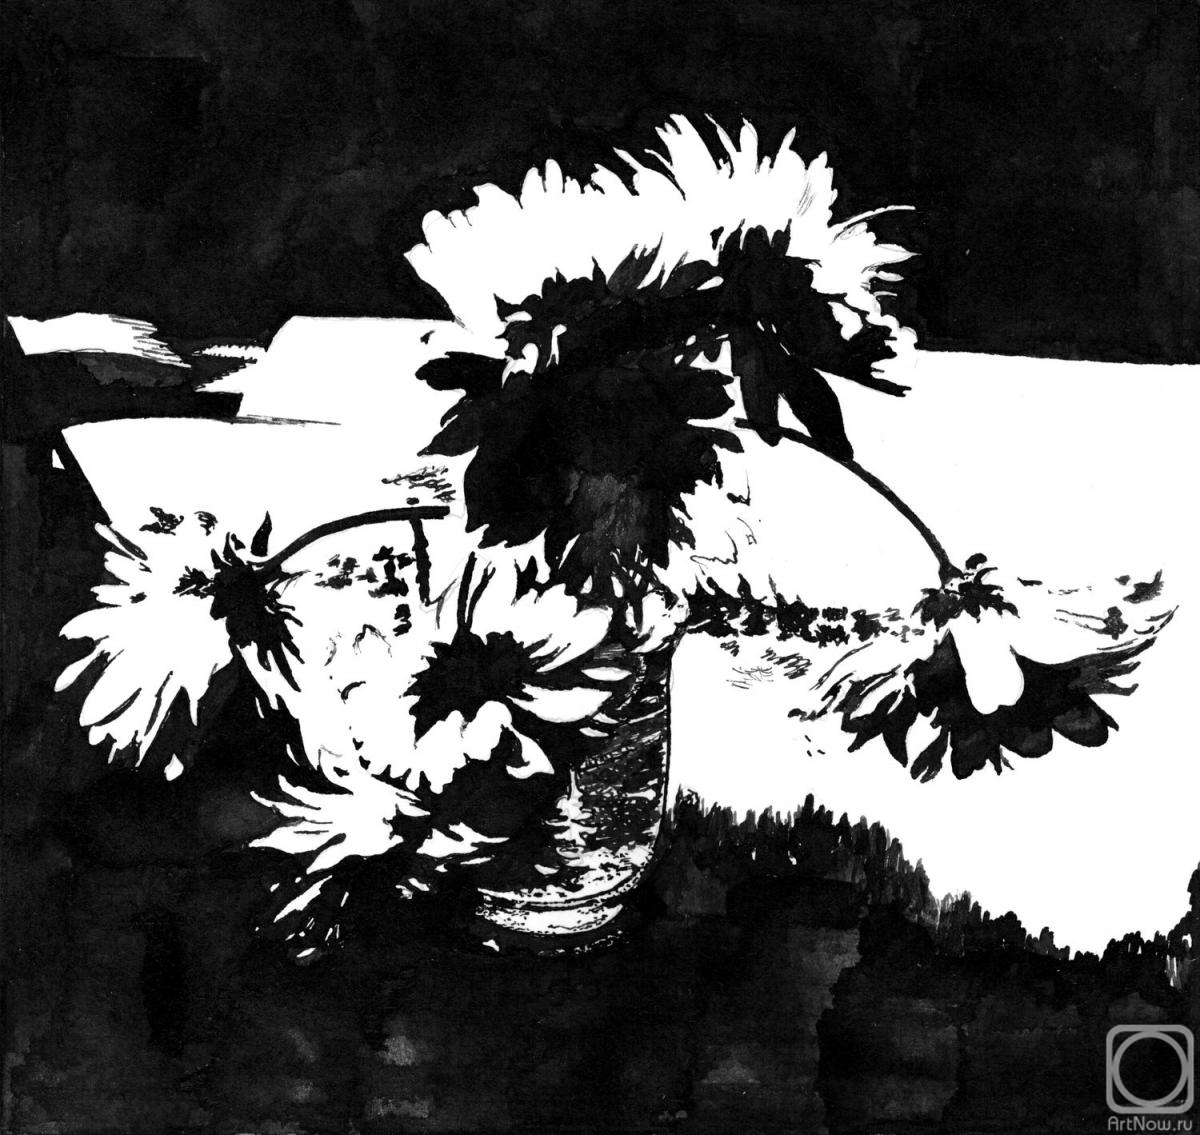 Abaimov Vladimir. Flowers in black